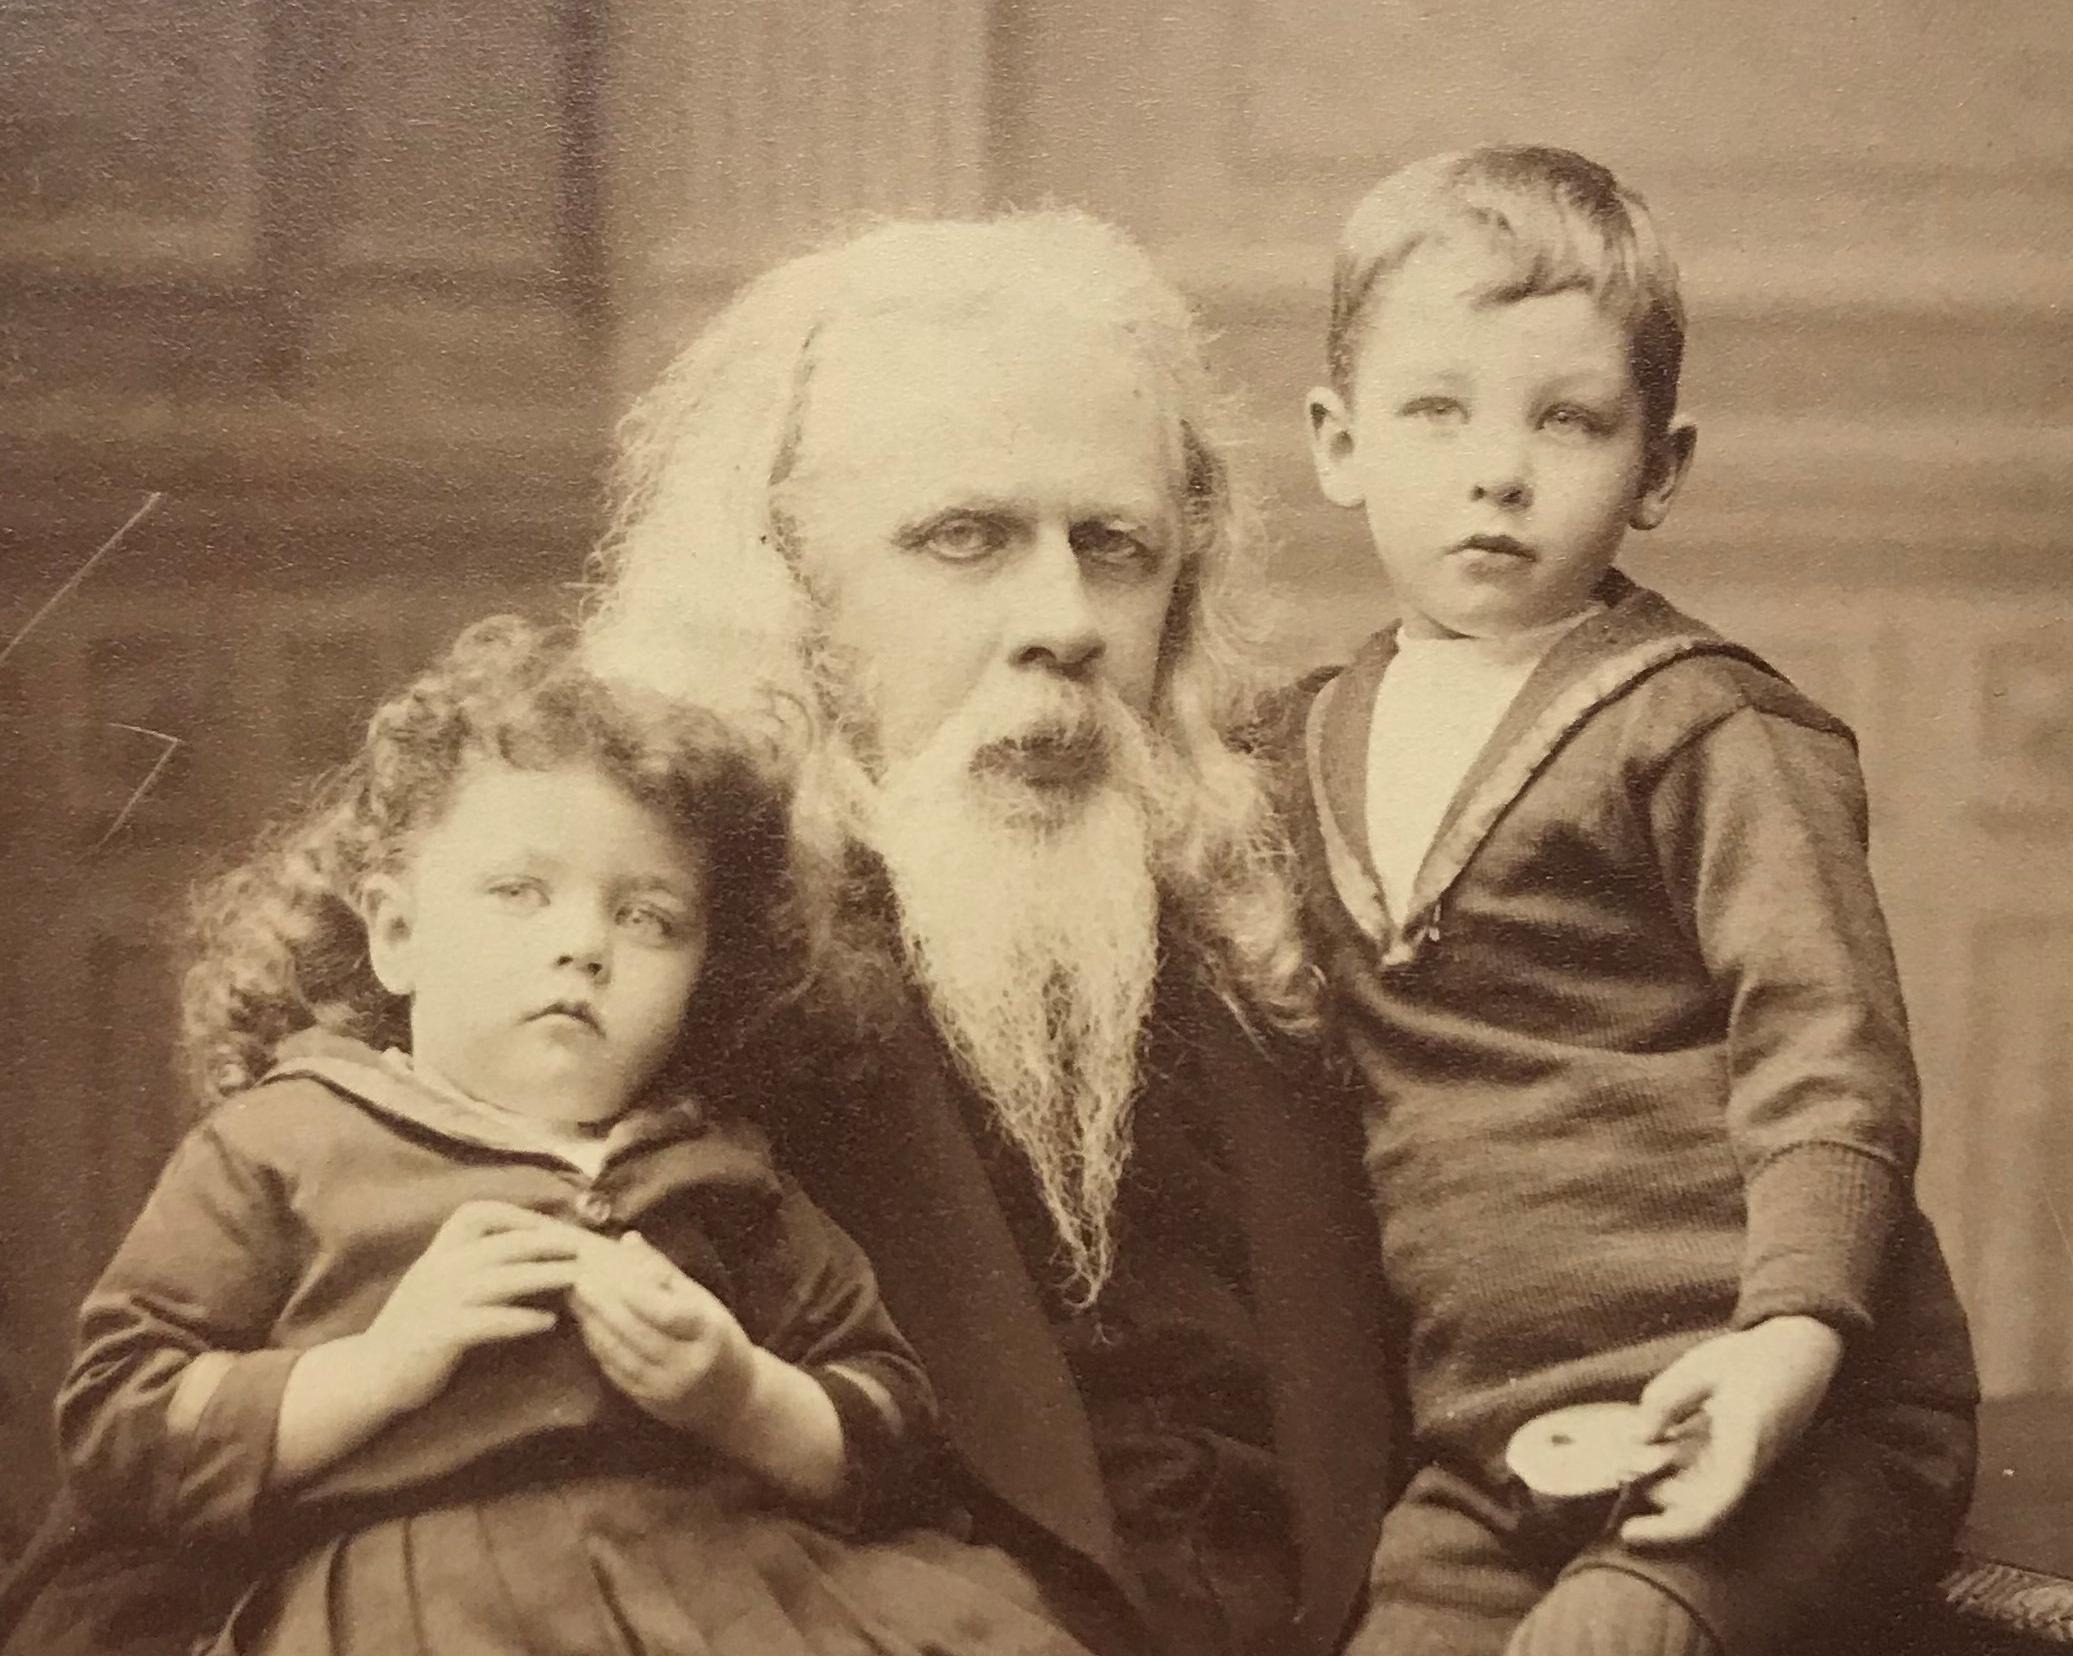 Fotografi av en långhårig man med långt vitt skägg som håller om två barn, en pojke och en flicka klädda i sjömanskostymer och snörkängor.